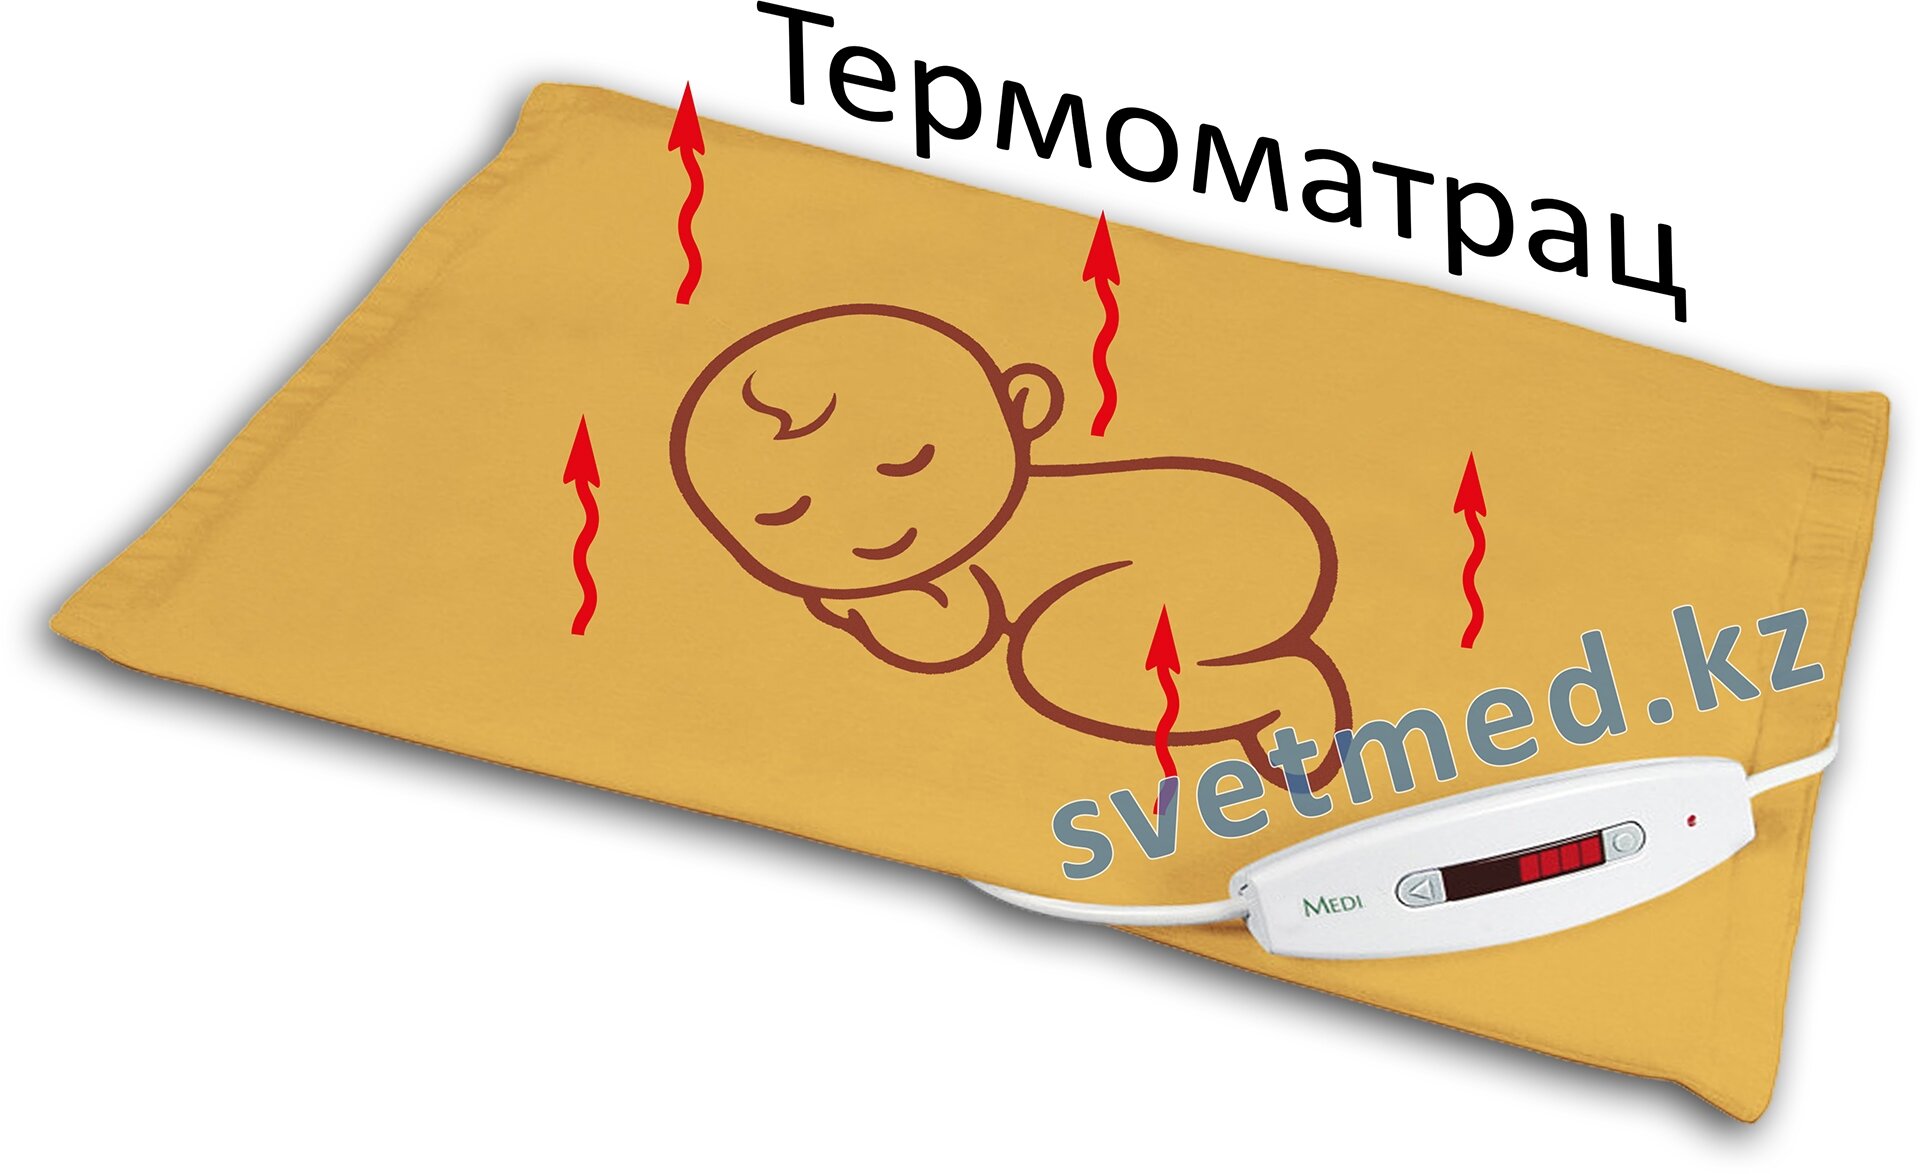 Термоматрац для младенца